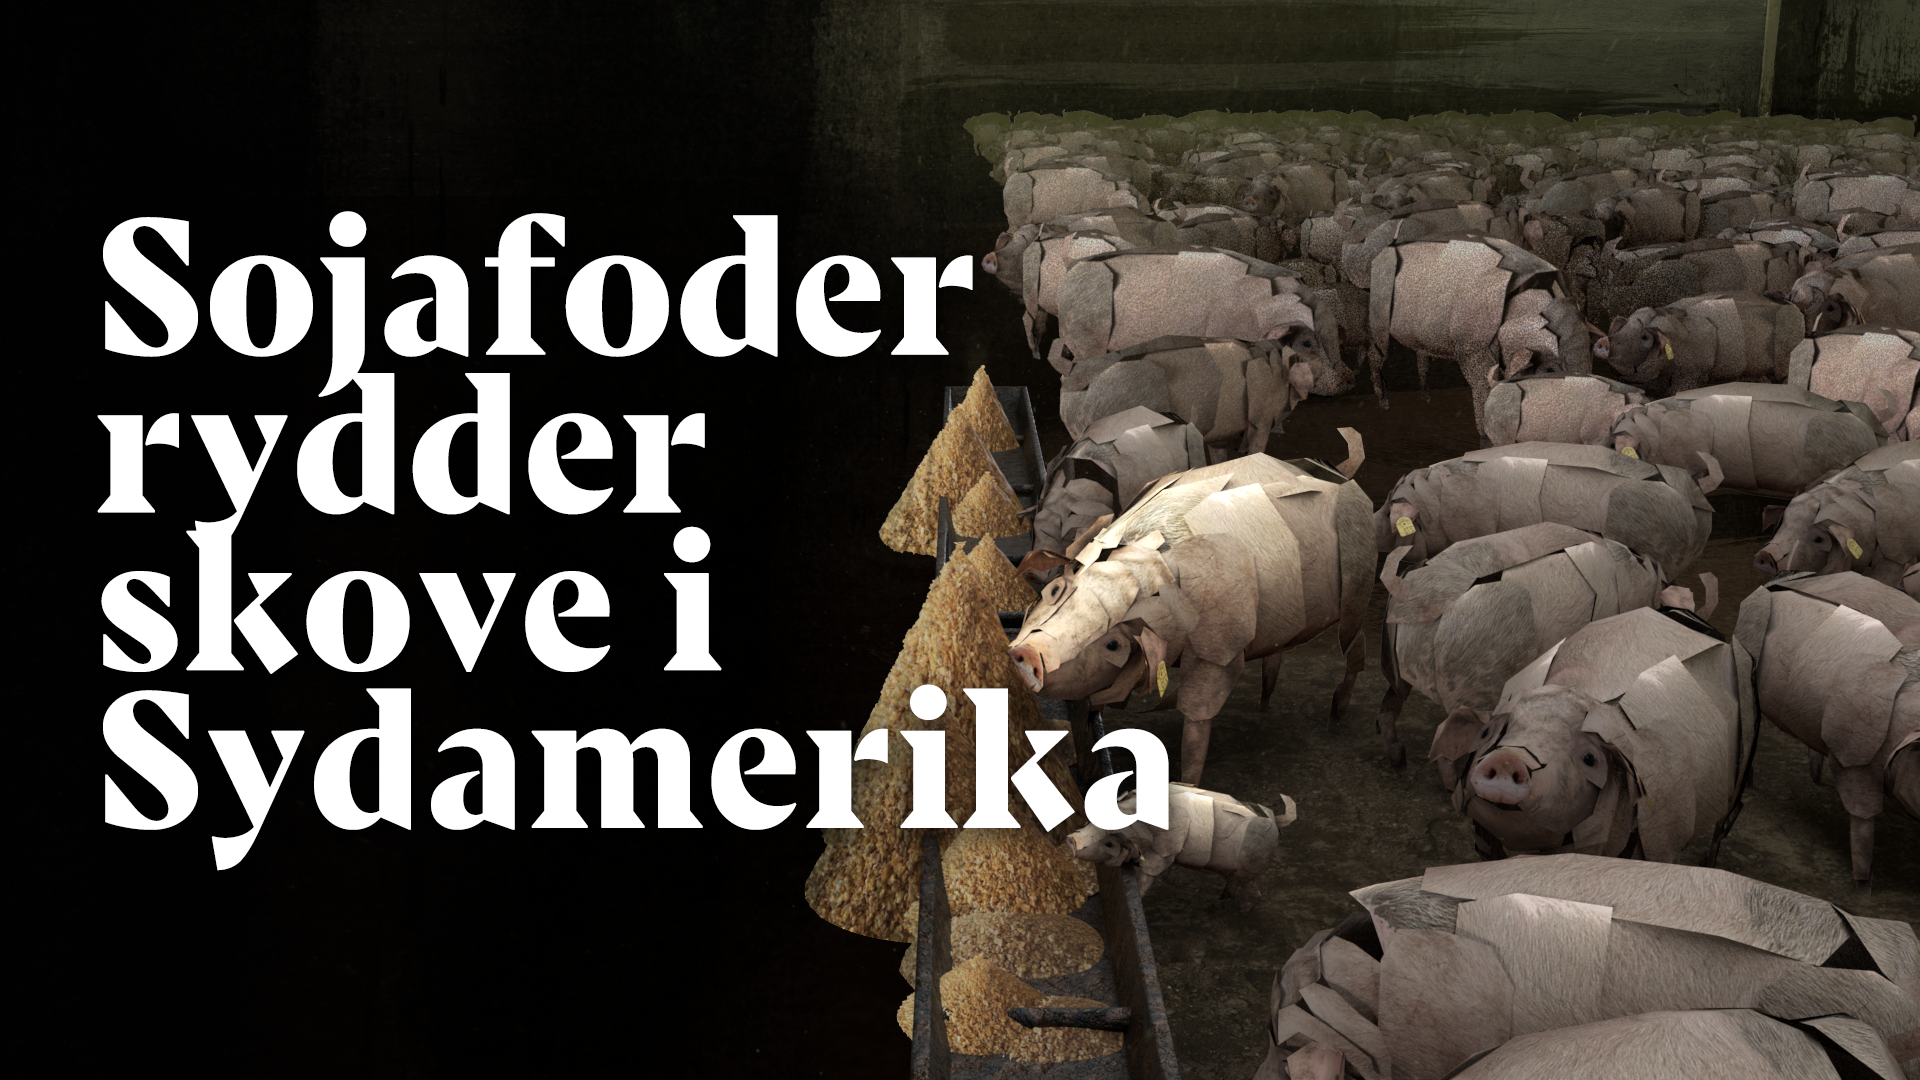 Sojaskrå i svinefoder er bag skovrydning – ikke et restprodukt - Greenpeace Danmark